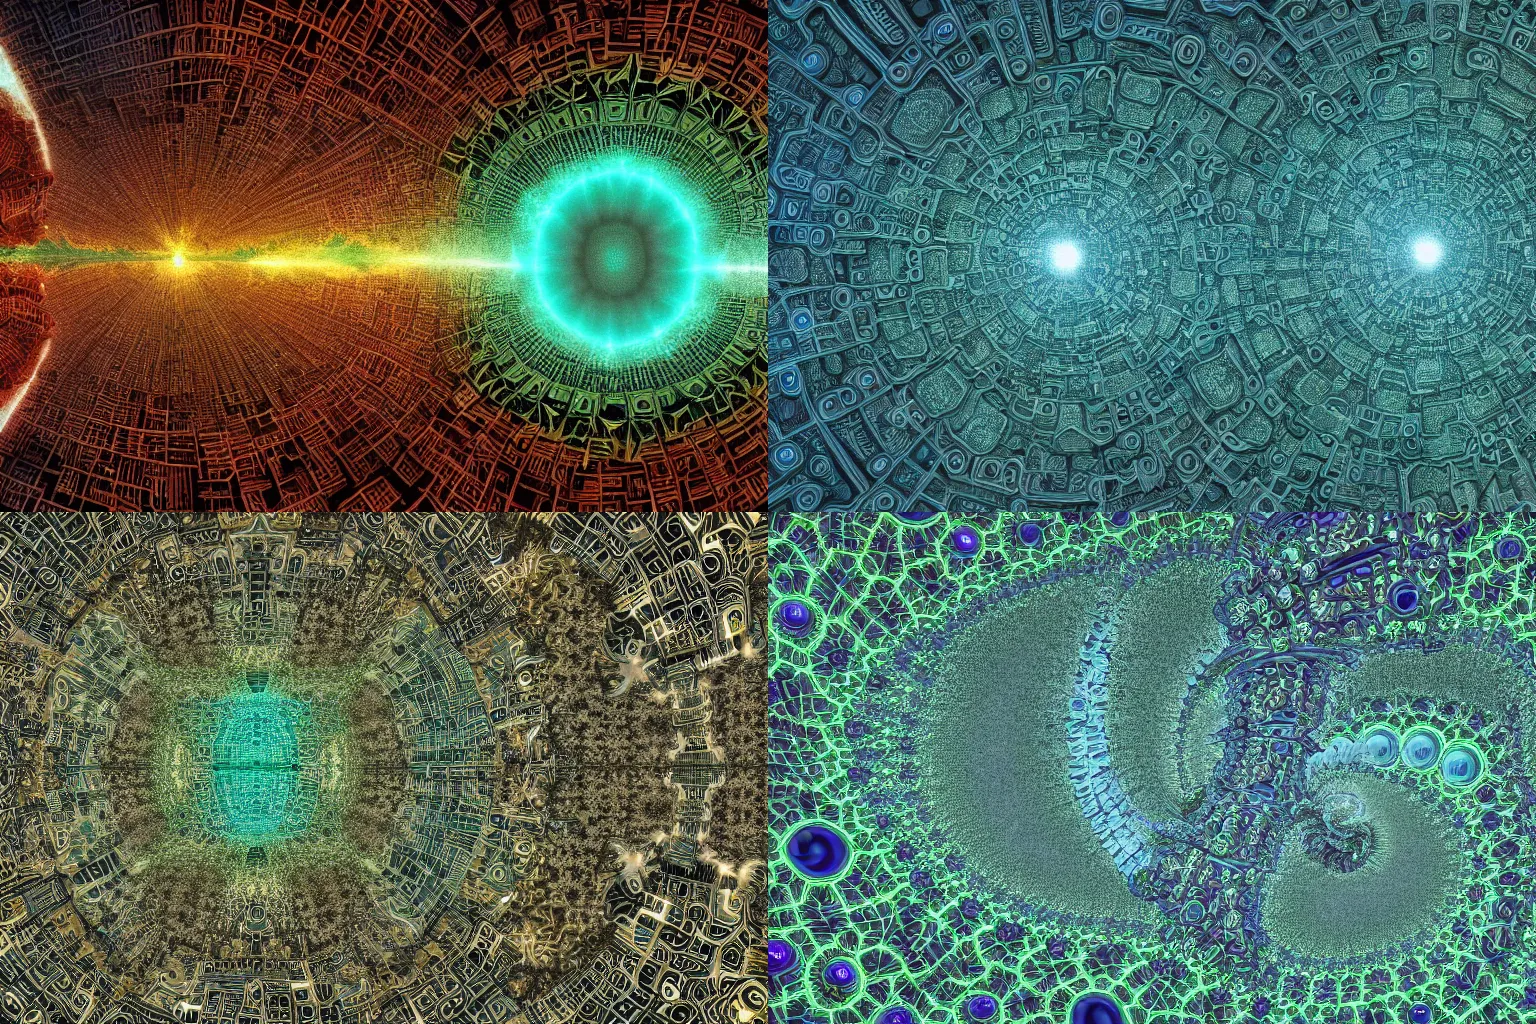 Prompt: alien city inspired by the Mandelbrot fractal, highly detailed 4K digital art